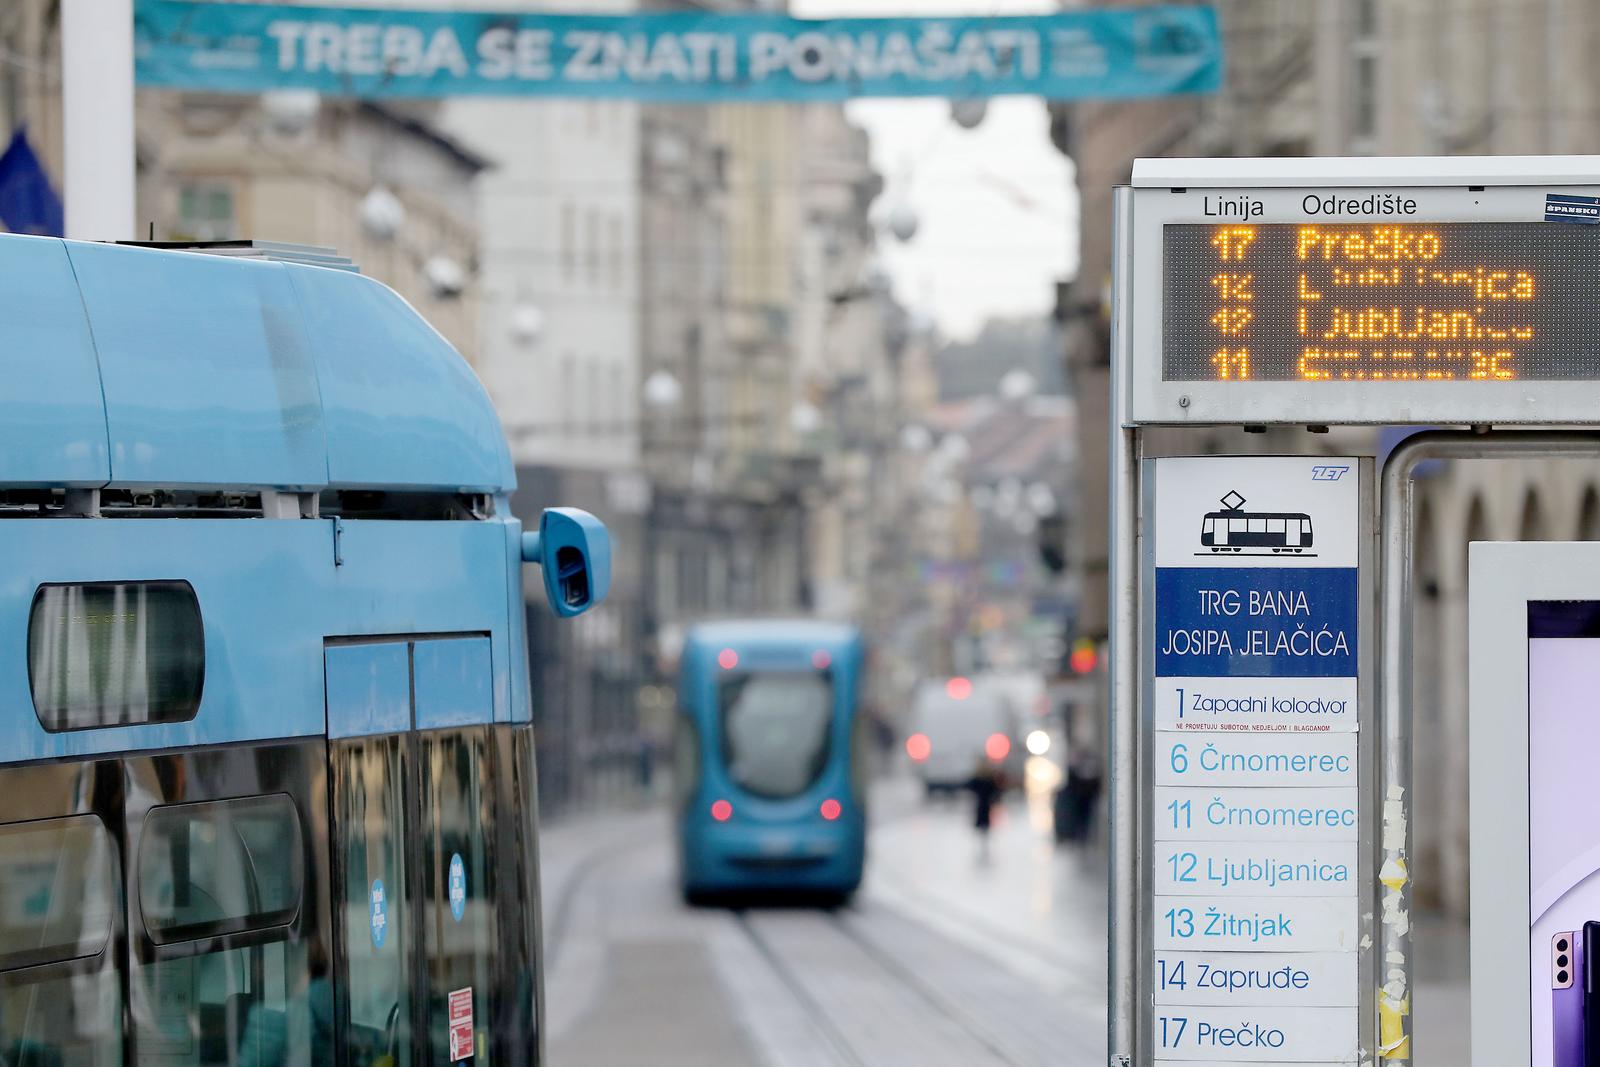 02.11.2021., Zagreb - Tijekom jesenskih skolskih praznika i odrzavanja online nastave, raspored voznje u tramvajskom i autobusnom prijevozu bit ce prilagodjen prometnoj potraznji, odnosno smanjen.
Od utorka, 2. studenoga do petka, 5. studenoga tramvaji ce voziti uz smanjen broj polazaka na vecini linija a i u autobusnom prometu ce se takodjer primjenjivati prilagodjeni vozni red.